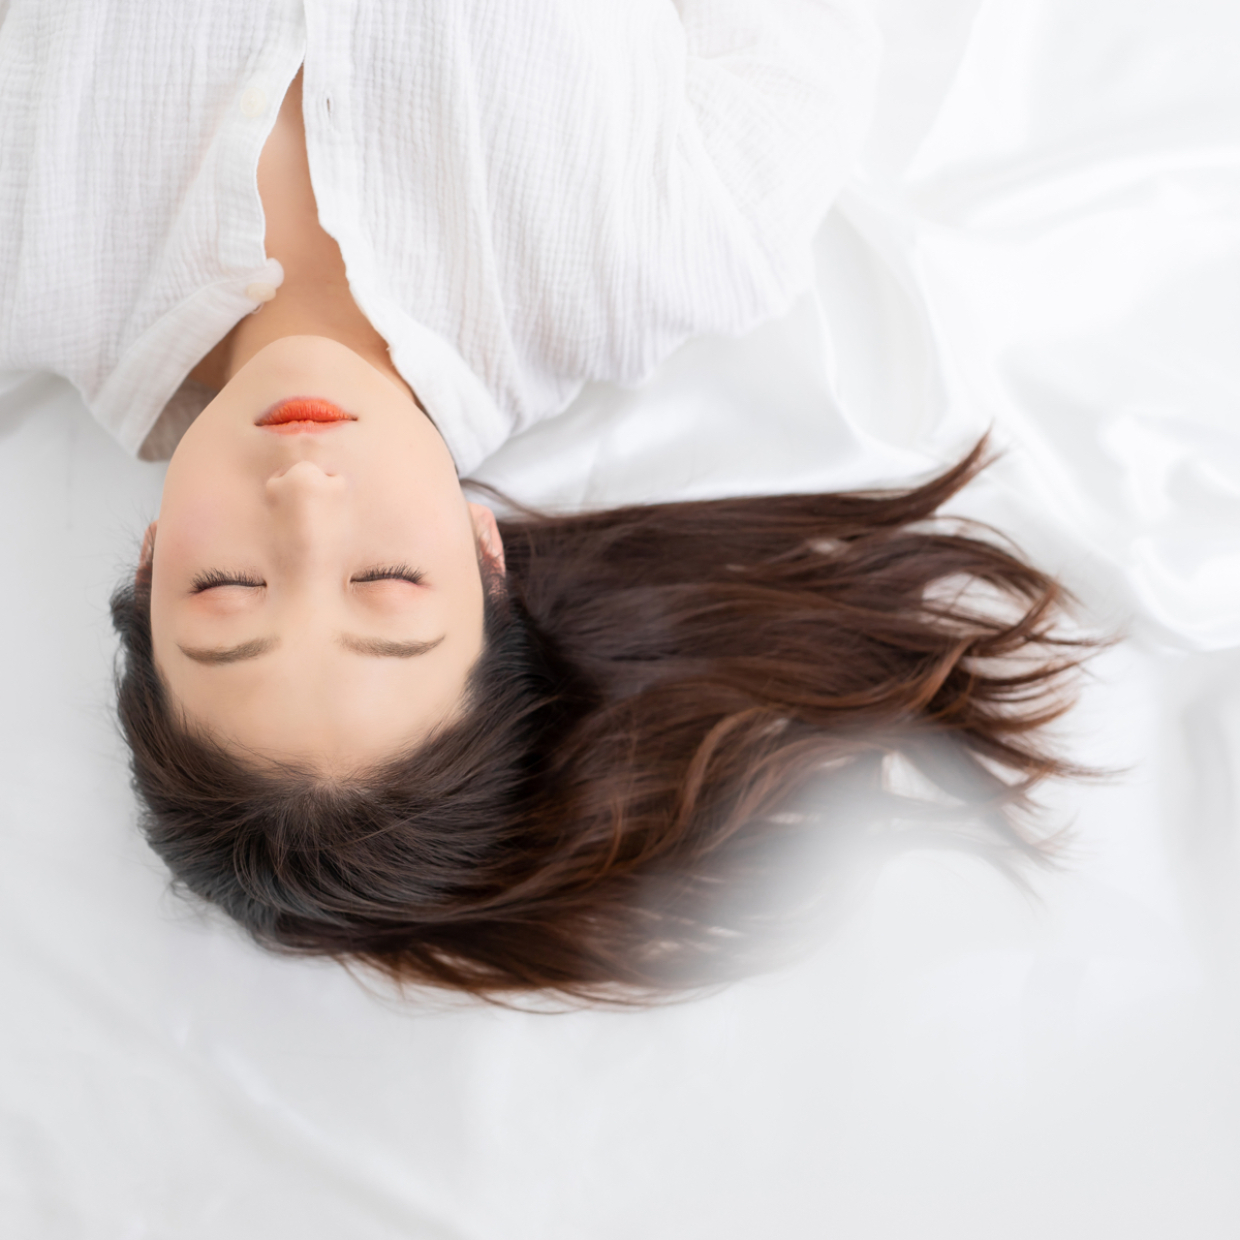  寝てもぐっすり眠れないのは更年期のせい？今すぐできる、ぐっすり眠るための2つの方法 